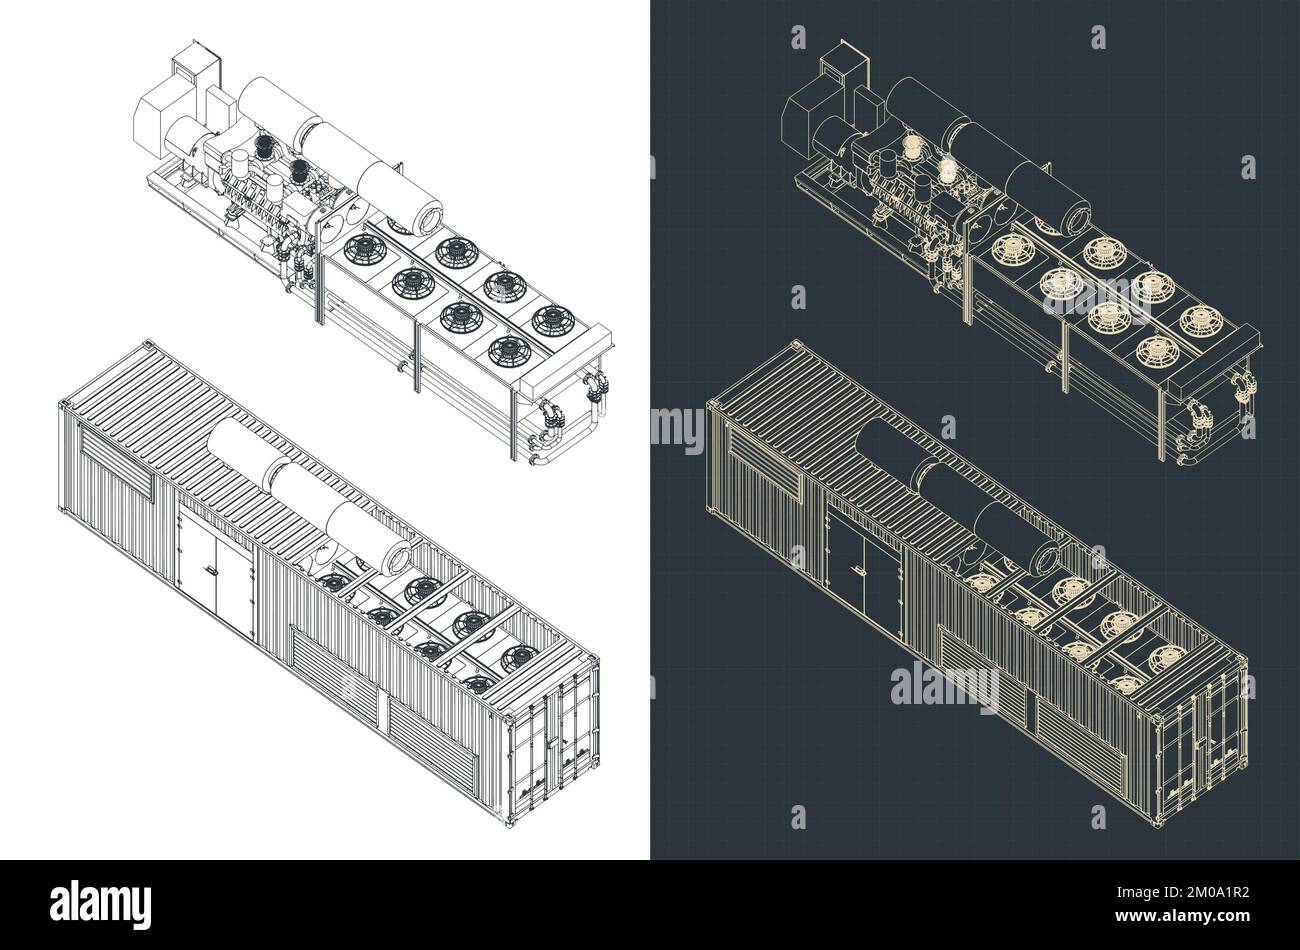 Isometrische Entwürfe der Containergeneratorstruktur Stock Vektor